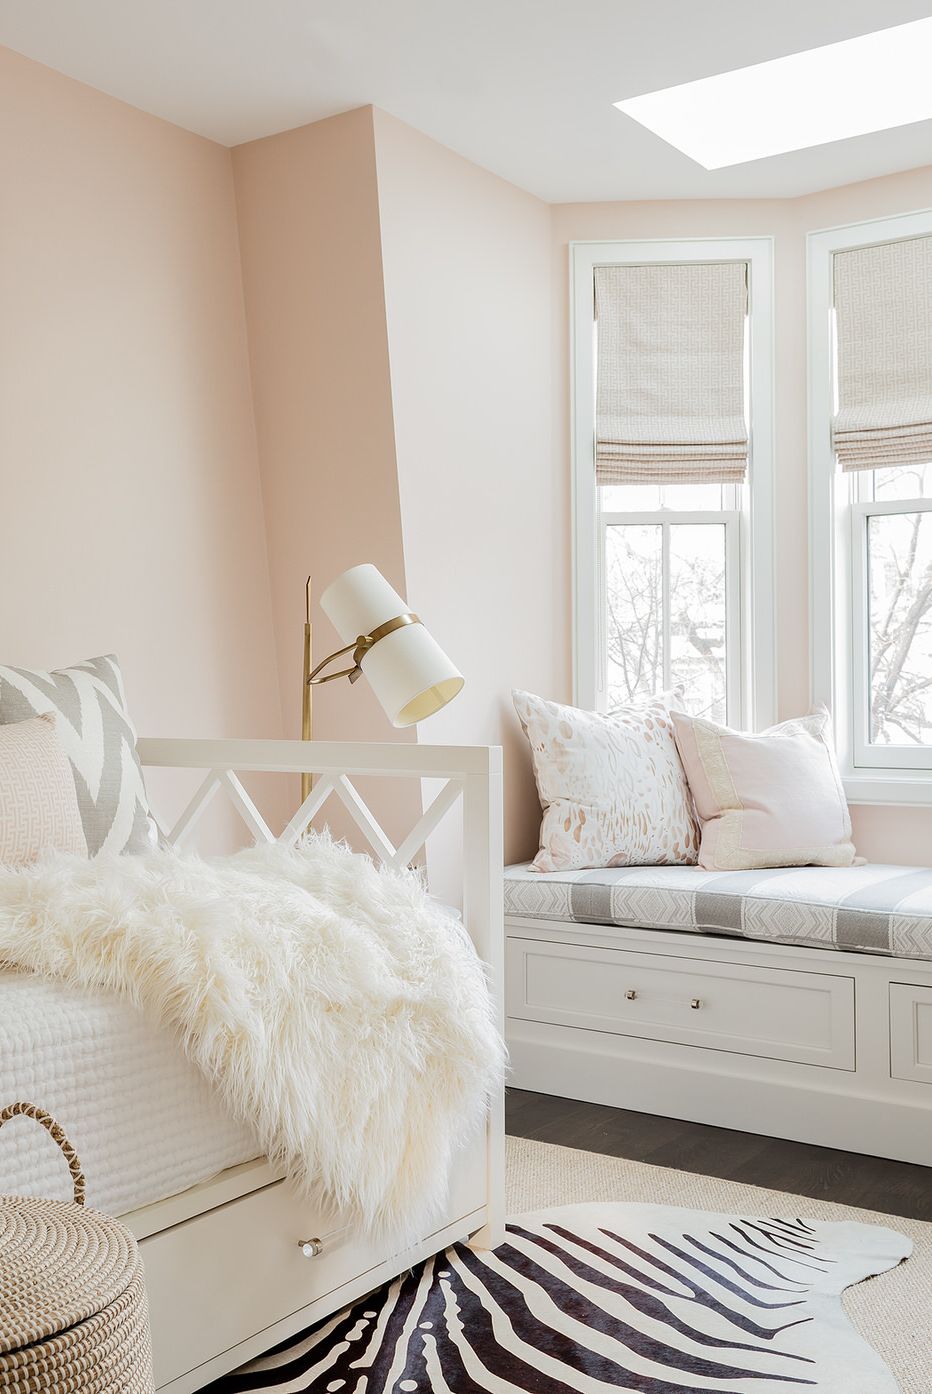 hình ảnh một góc phòng ngủ màu hồng đào có ghế ngồi bên cửa sổ kính